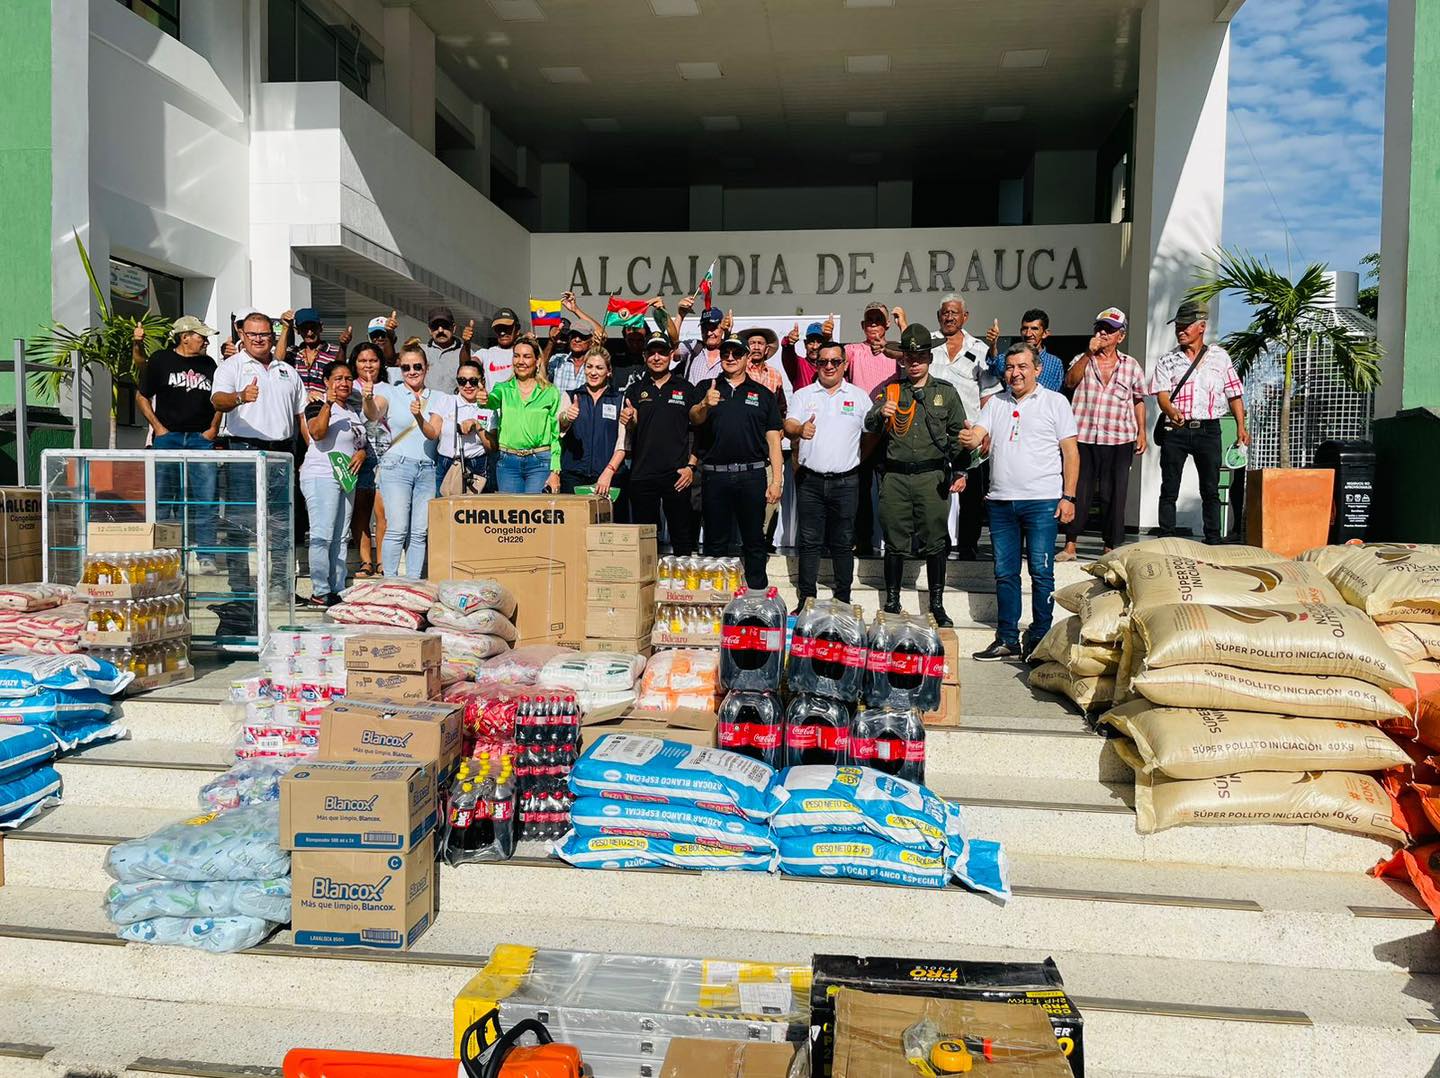 La alcaldía de Arauca, a través de la Secretaria de Agricultura, entregó proyectos productivos a las personas que se dedicaban al transporte con vehículos de tracción animal.   